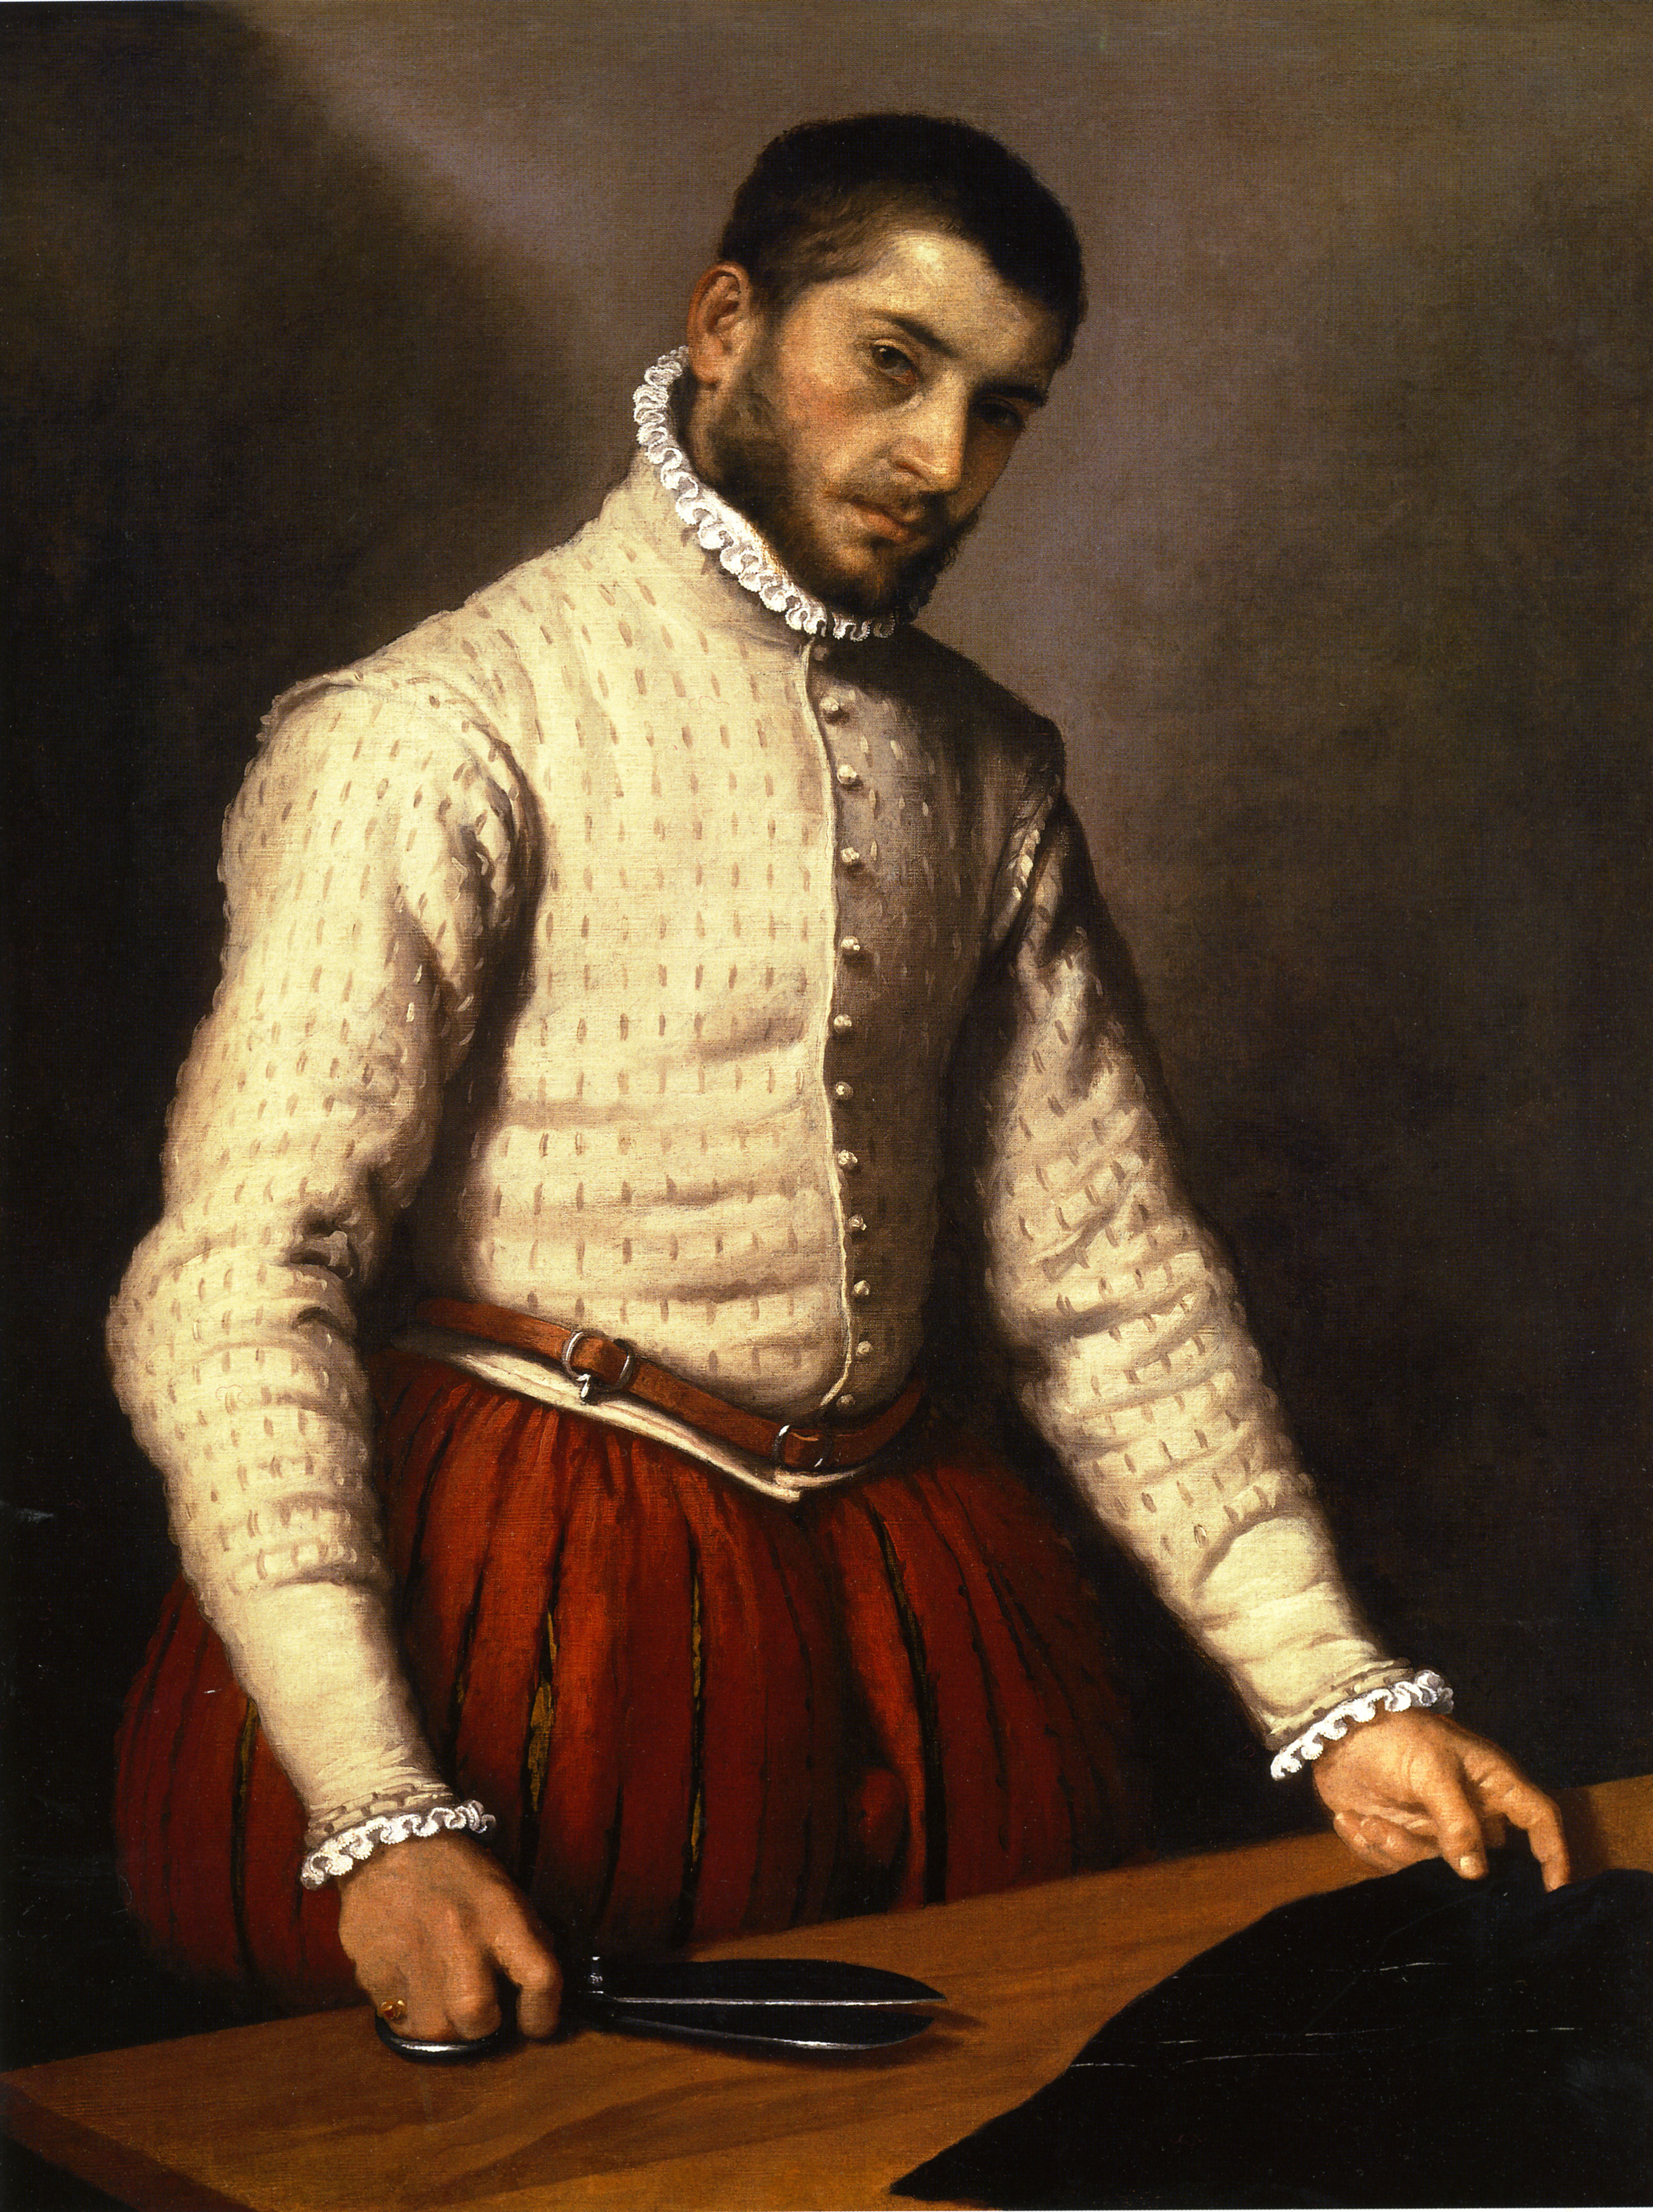 Portrait of a Tailor ("Il Tagliapanni") by Giovanni Battista Moroni - circa 1570 - 99.5 x 77 cm National Gallery